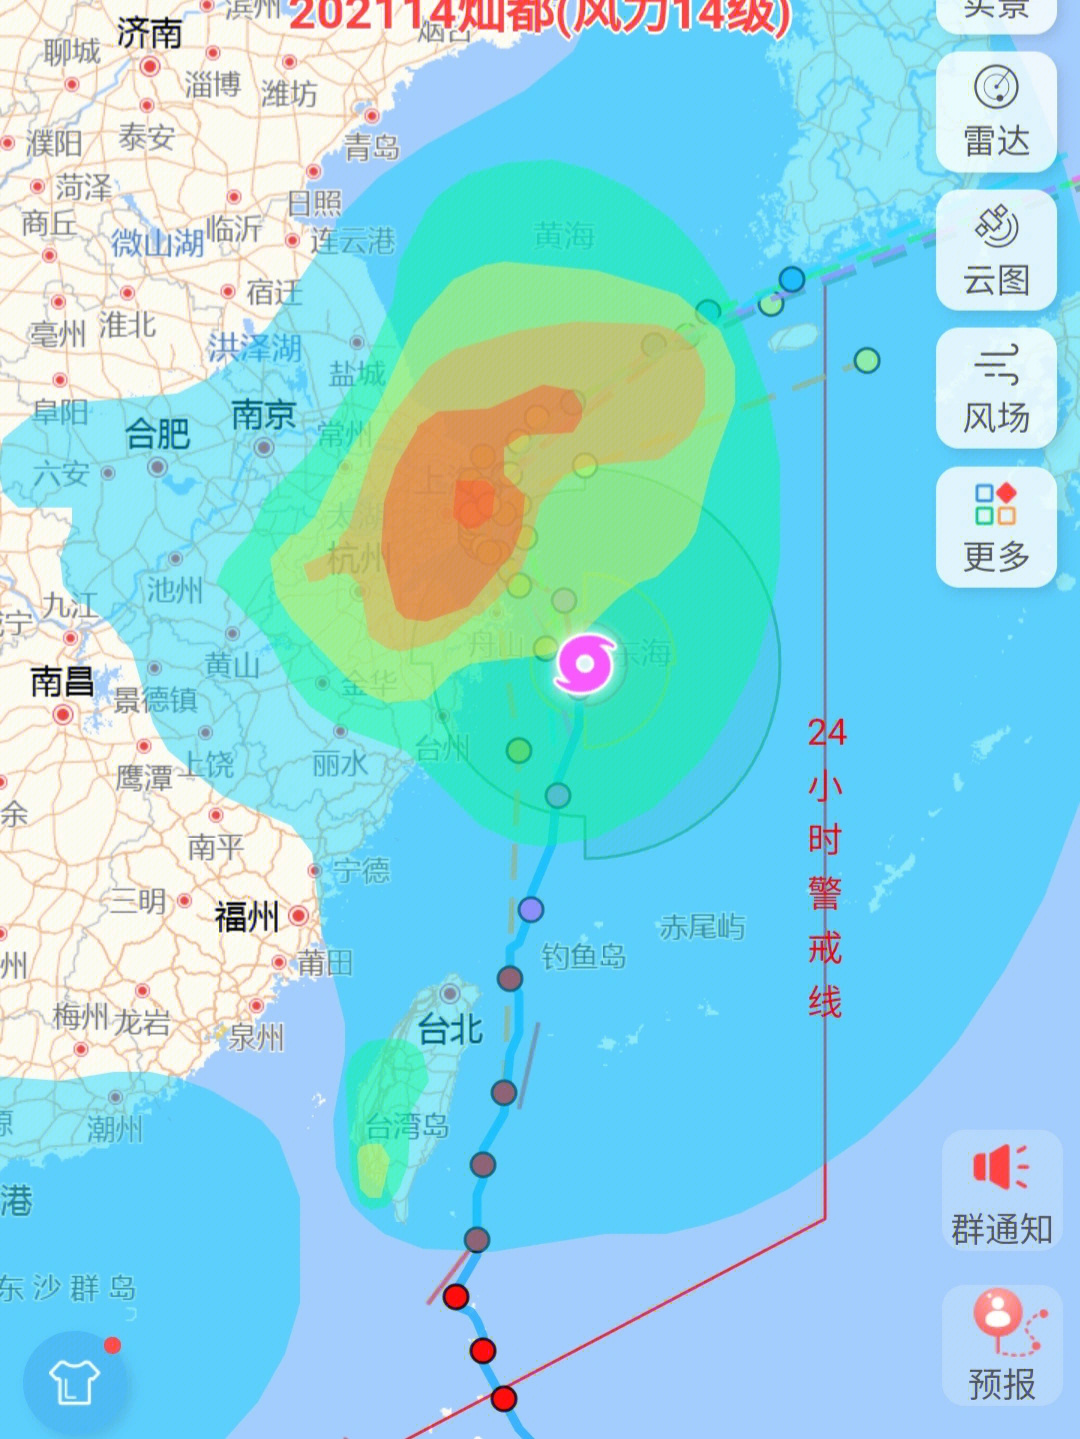 天气预报台风符号_汕尾天气台风预报_天气台风预报图